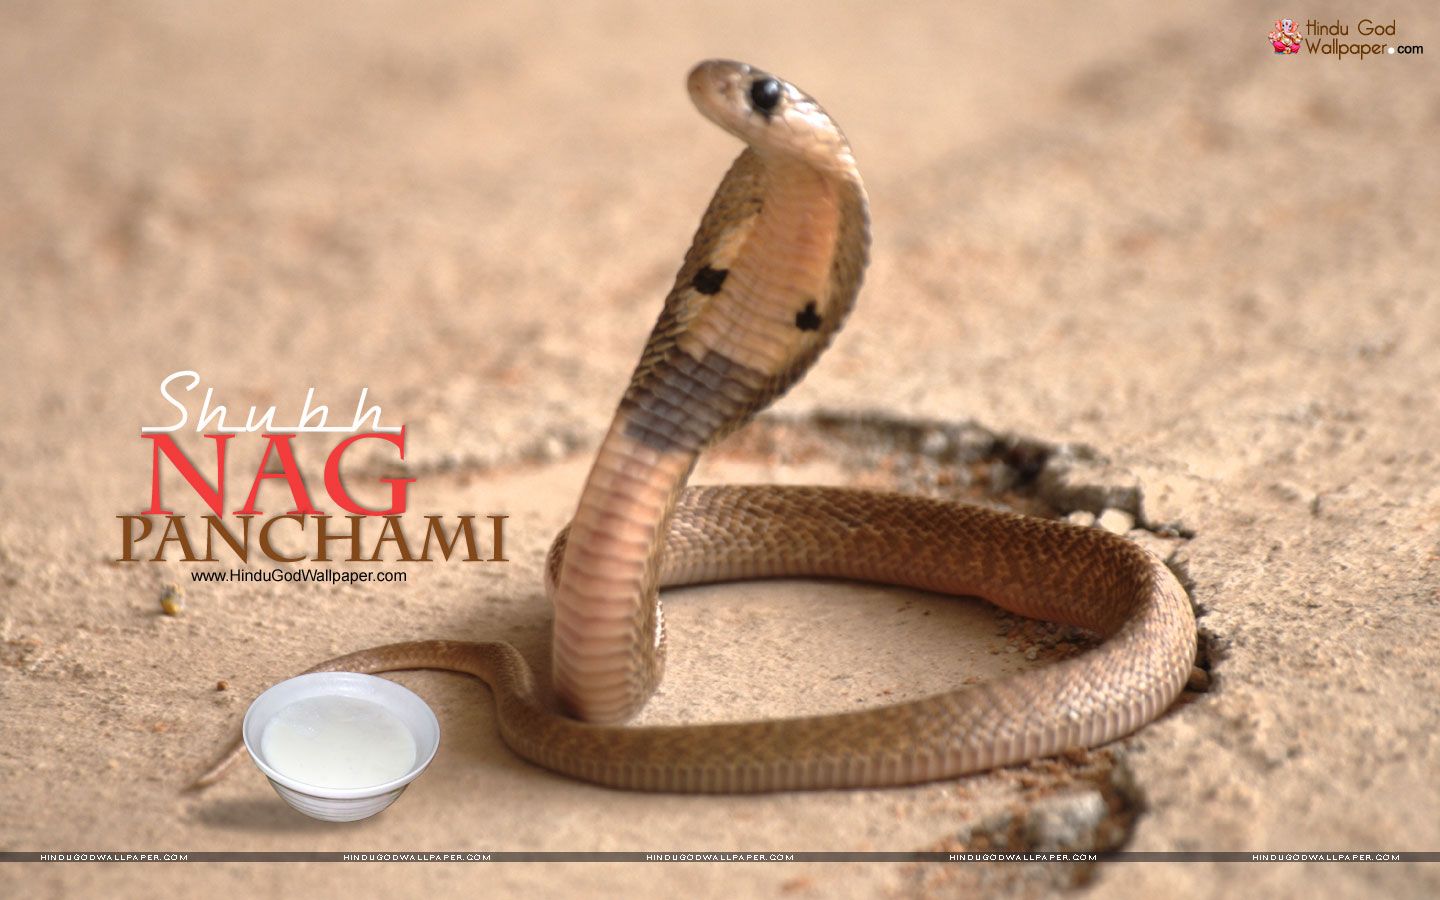 Happy Nag Panchami Image Download - 1440x900 Wallpaper 